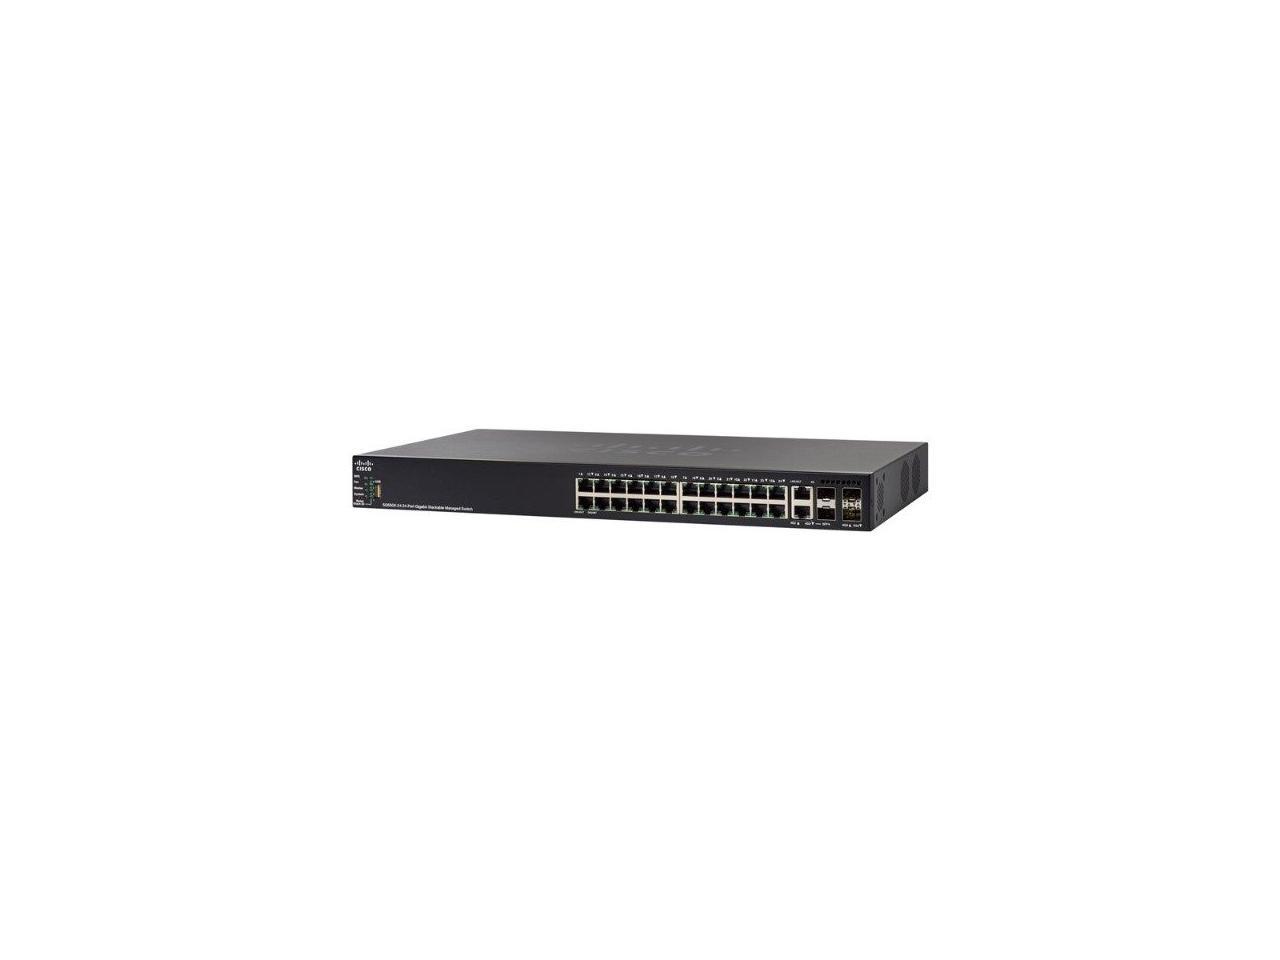 Cisco 550X Series SG550X-24MPP - Switch - L3 - Managed - 24 x 10/100/1000 (PoE+) + 2 x 10 Gigabit SFP+ (uplink) + 2 x co